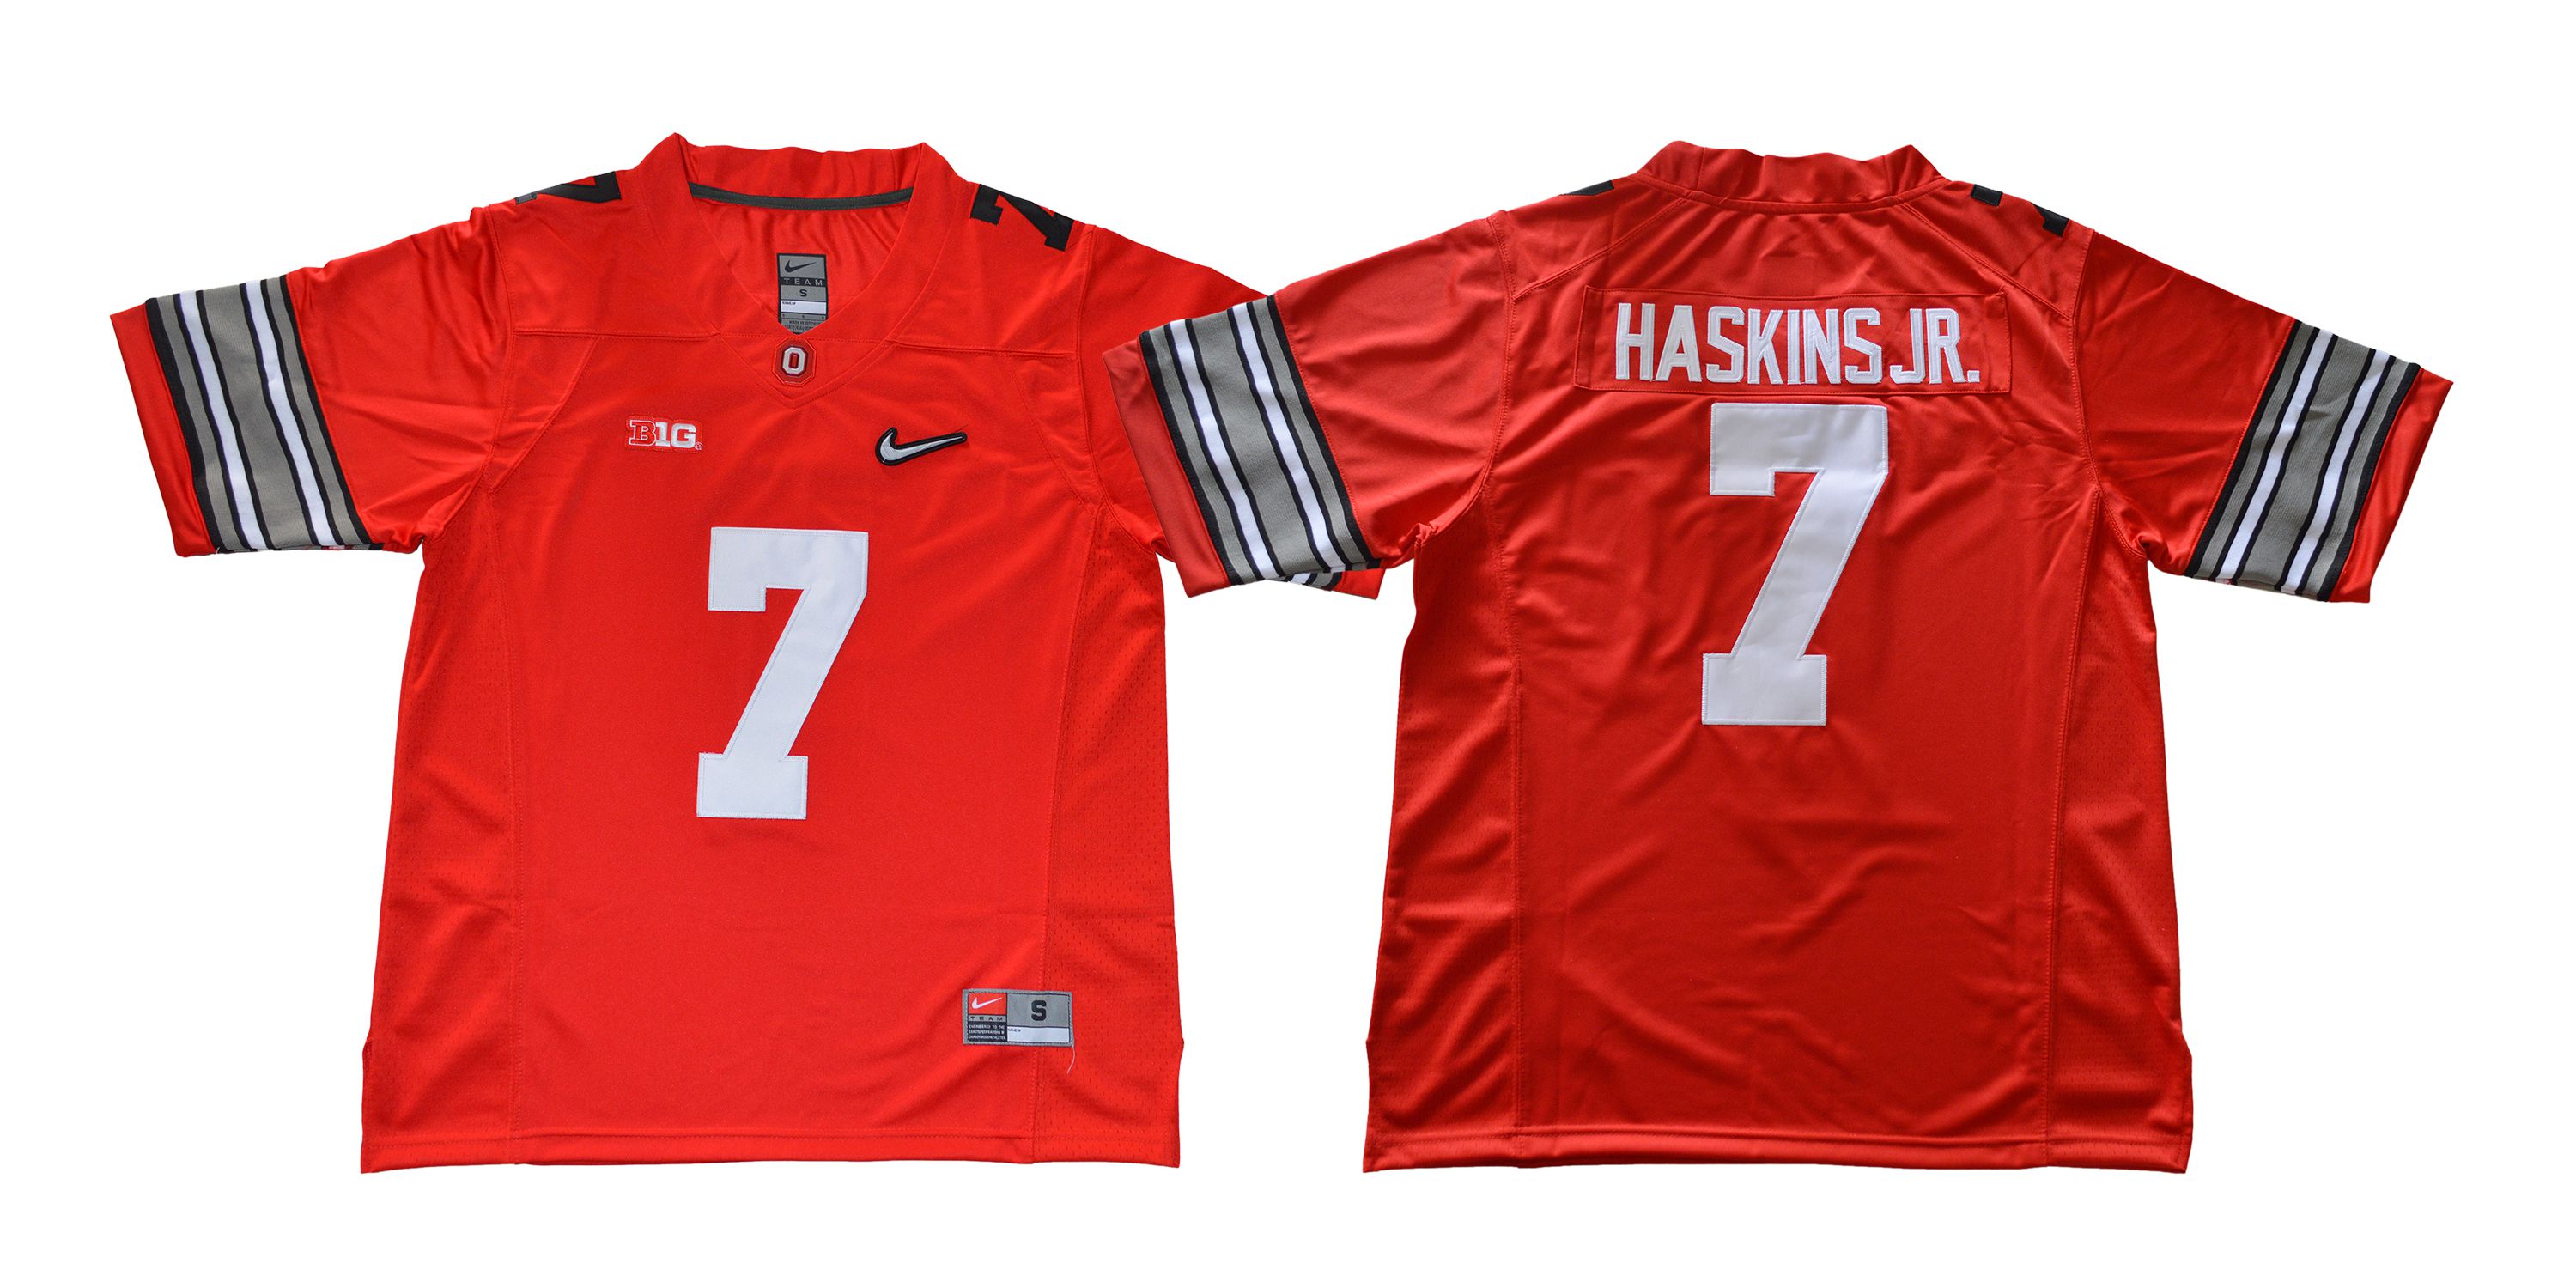 Men Ohio State Buckeyes #7 Haskins jr Diamond Red Nike NCAA Jerseys->->NCAA Jersey